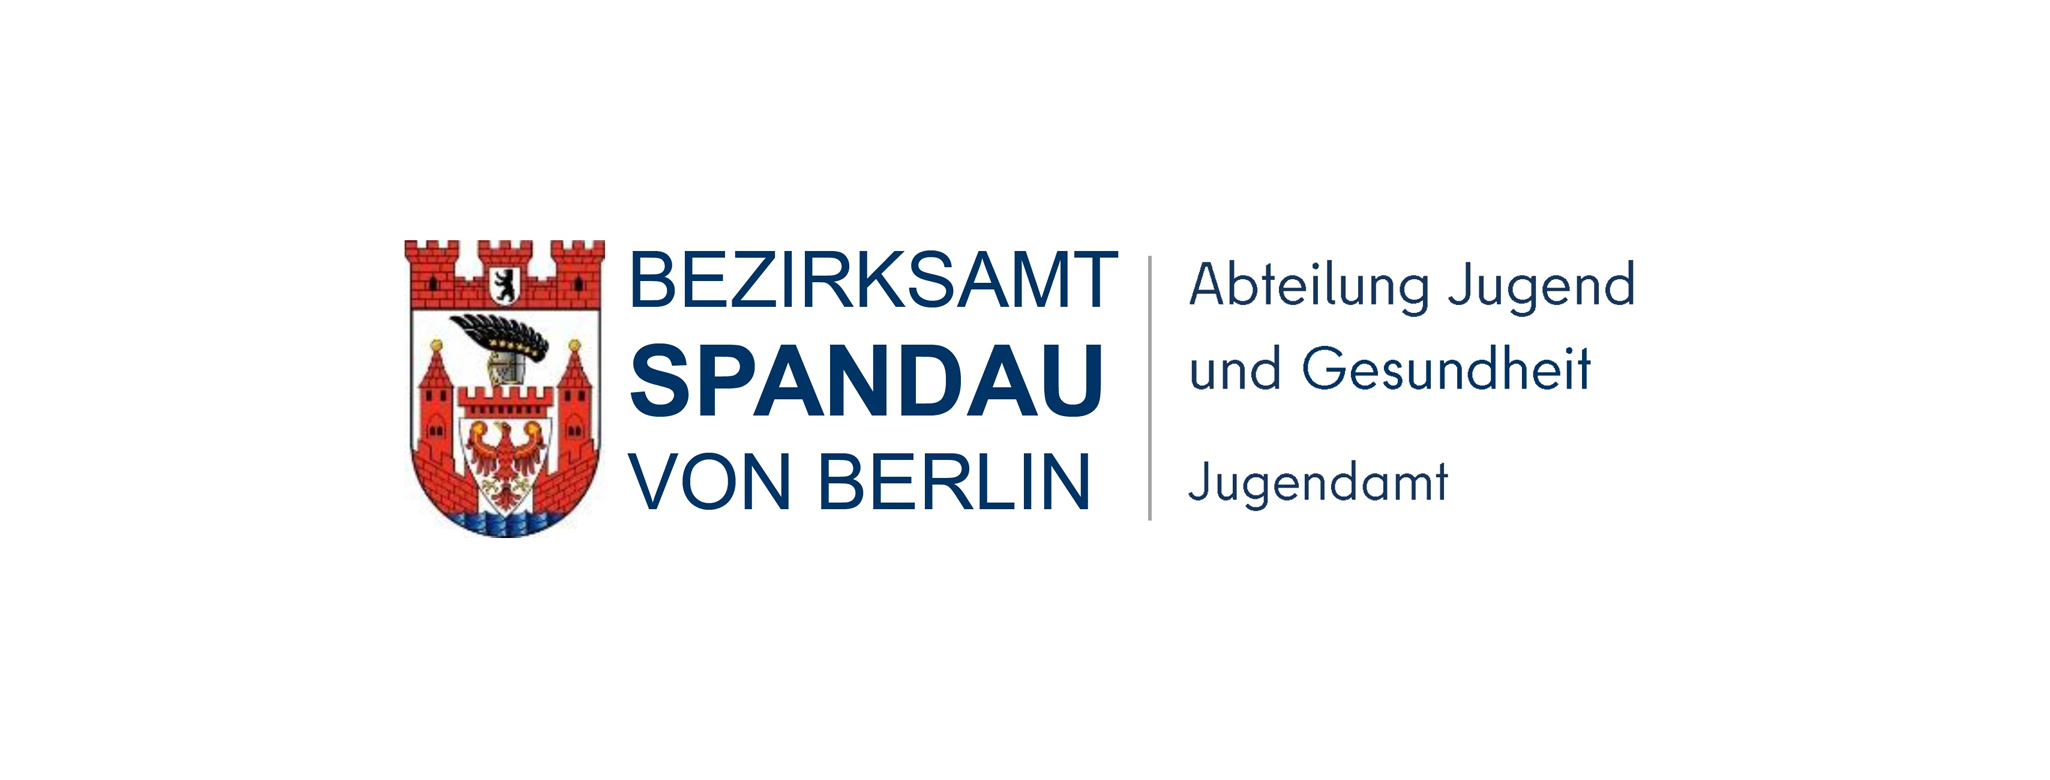 KD Berlin_Justiq_2022_Logo_Abt_JA